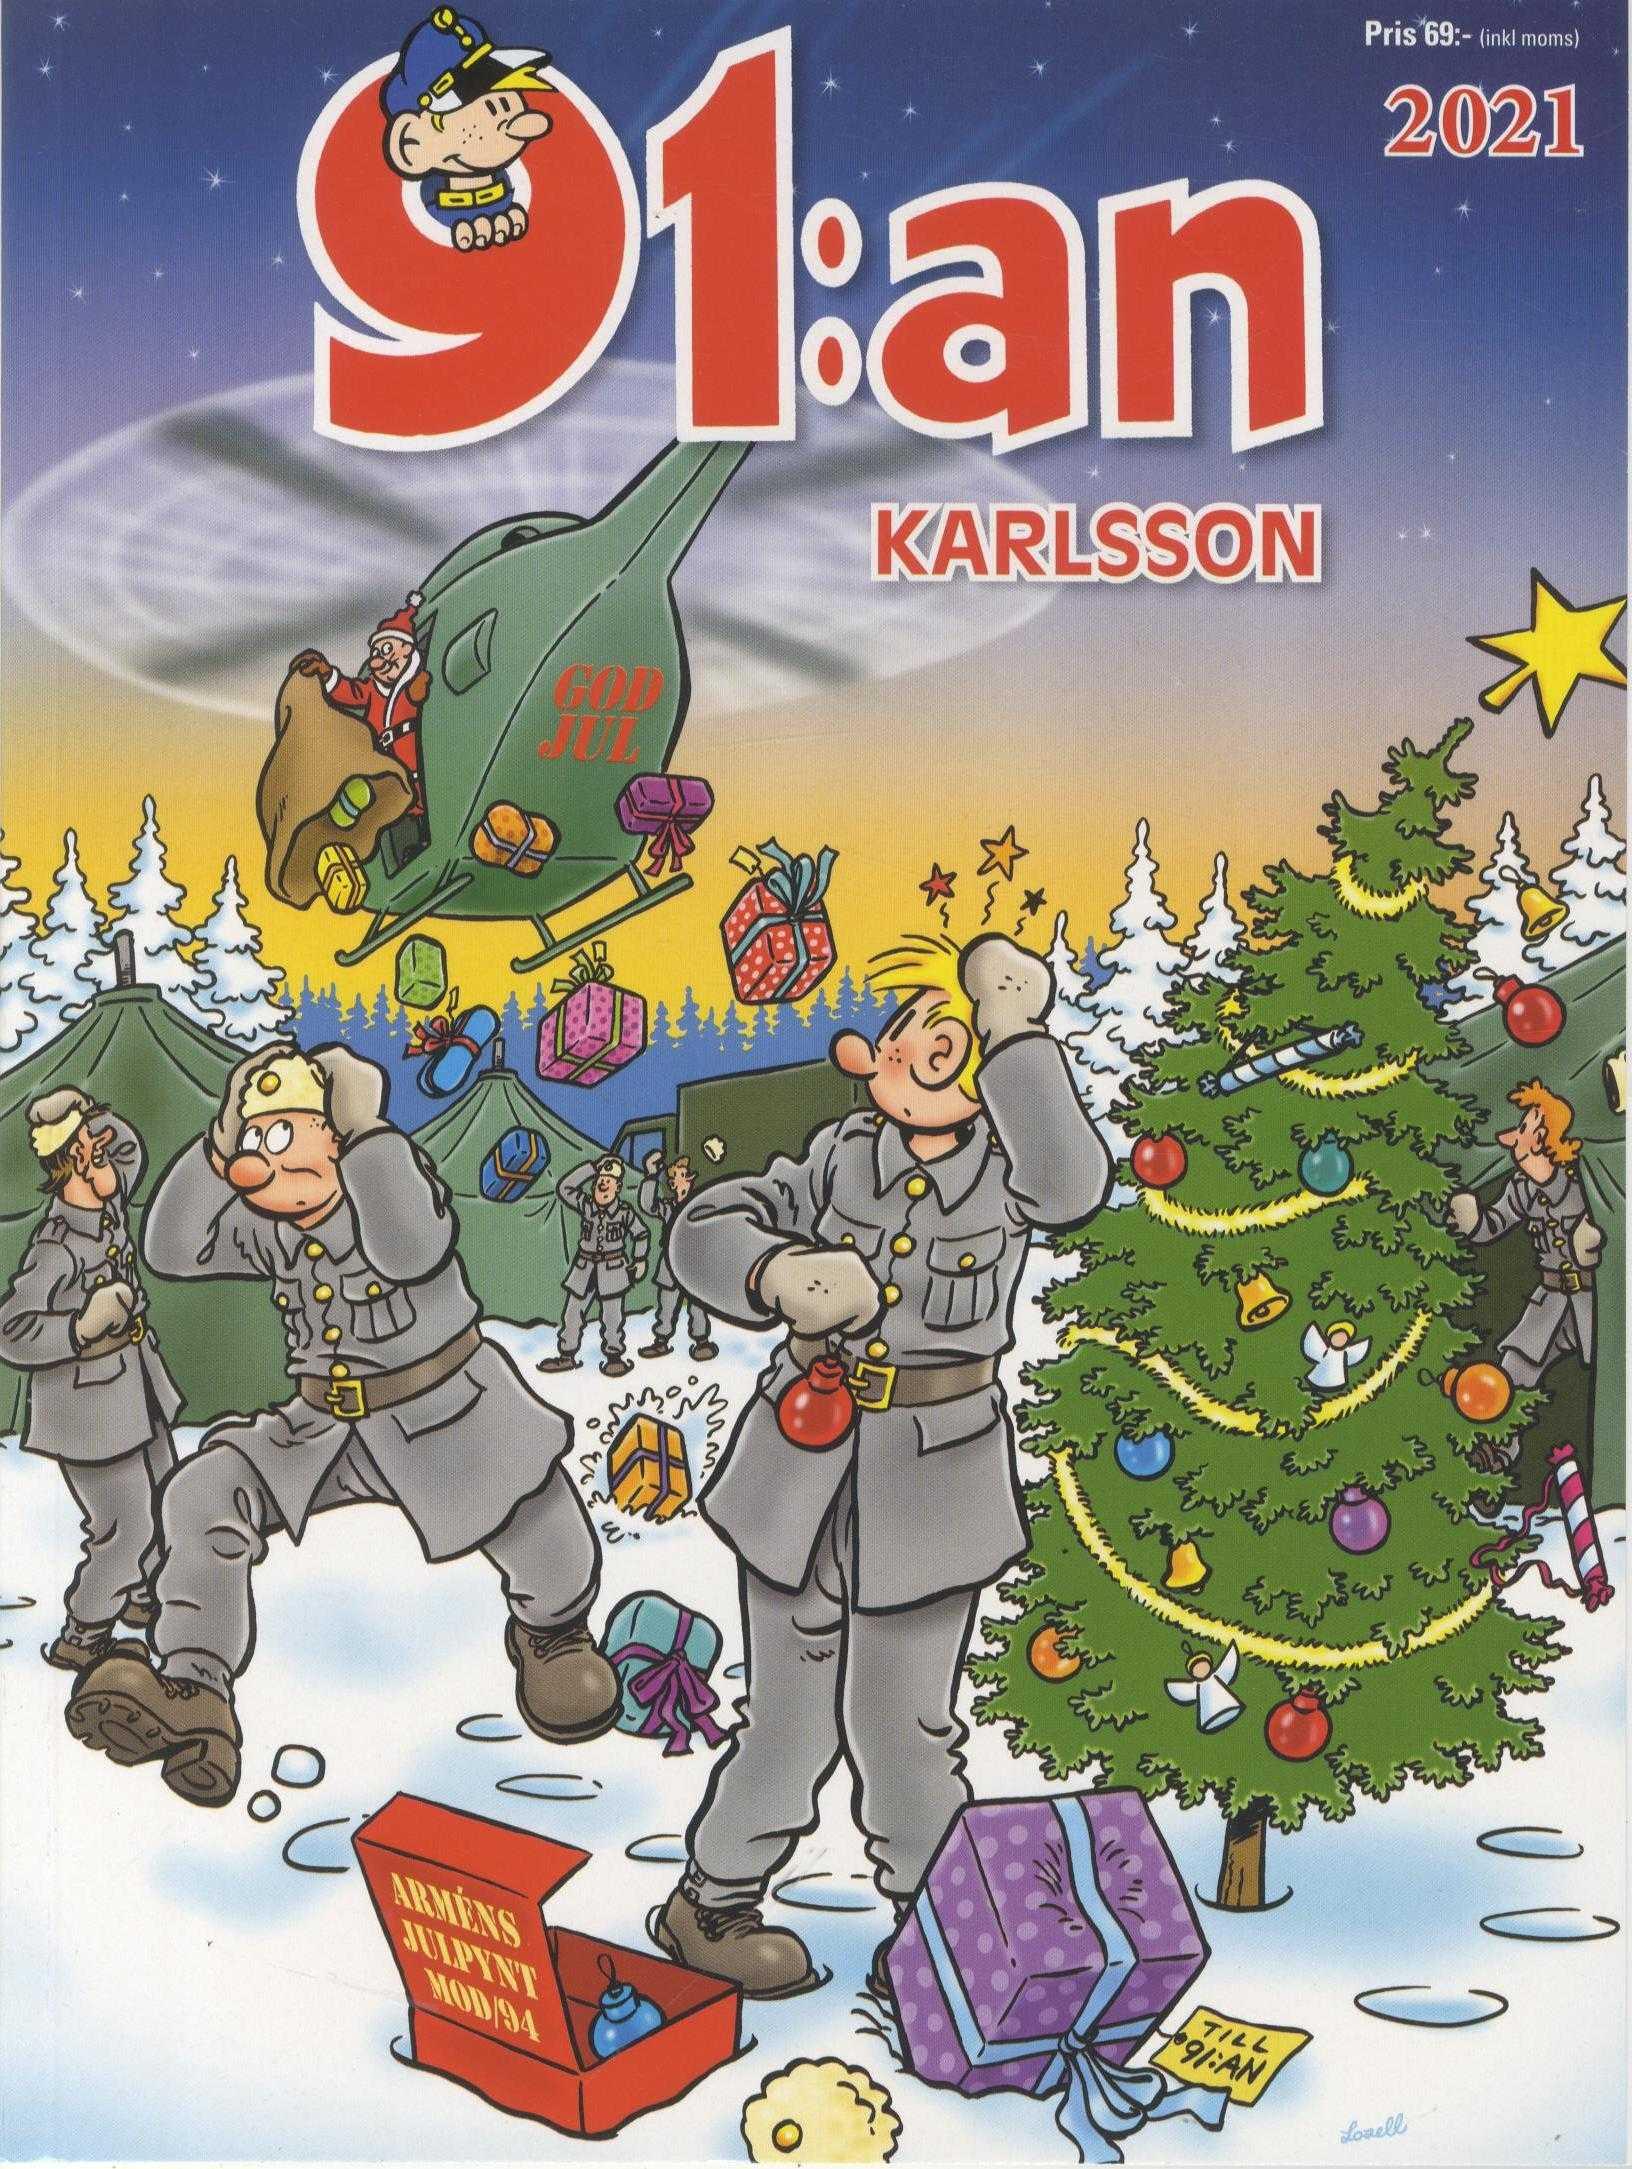 91:An Karlsson Jul